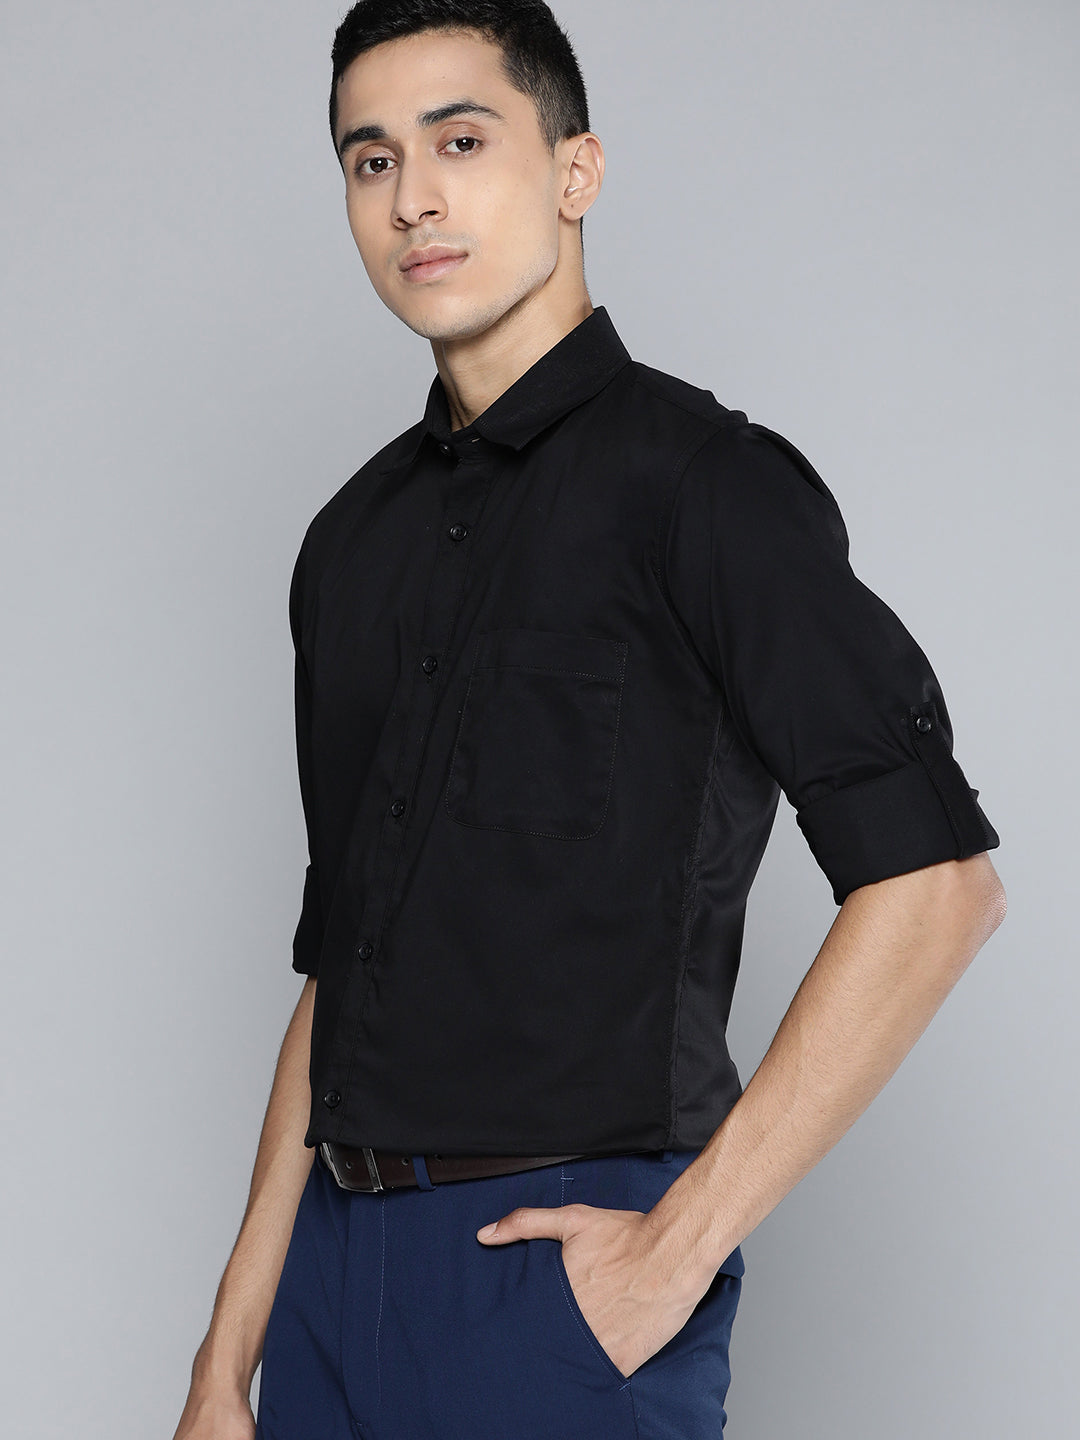 DENNISON Men Black Solid Smart Slim Fit Stretchable Lycra Formal Shirt